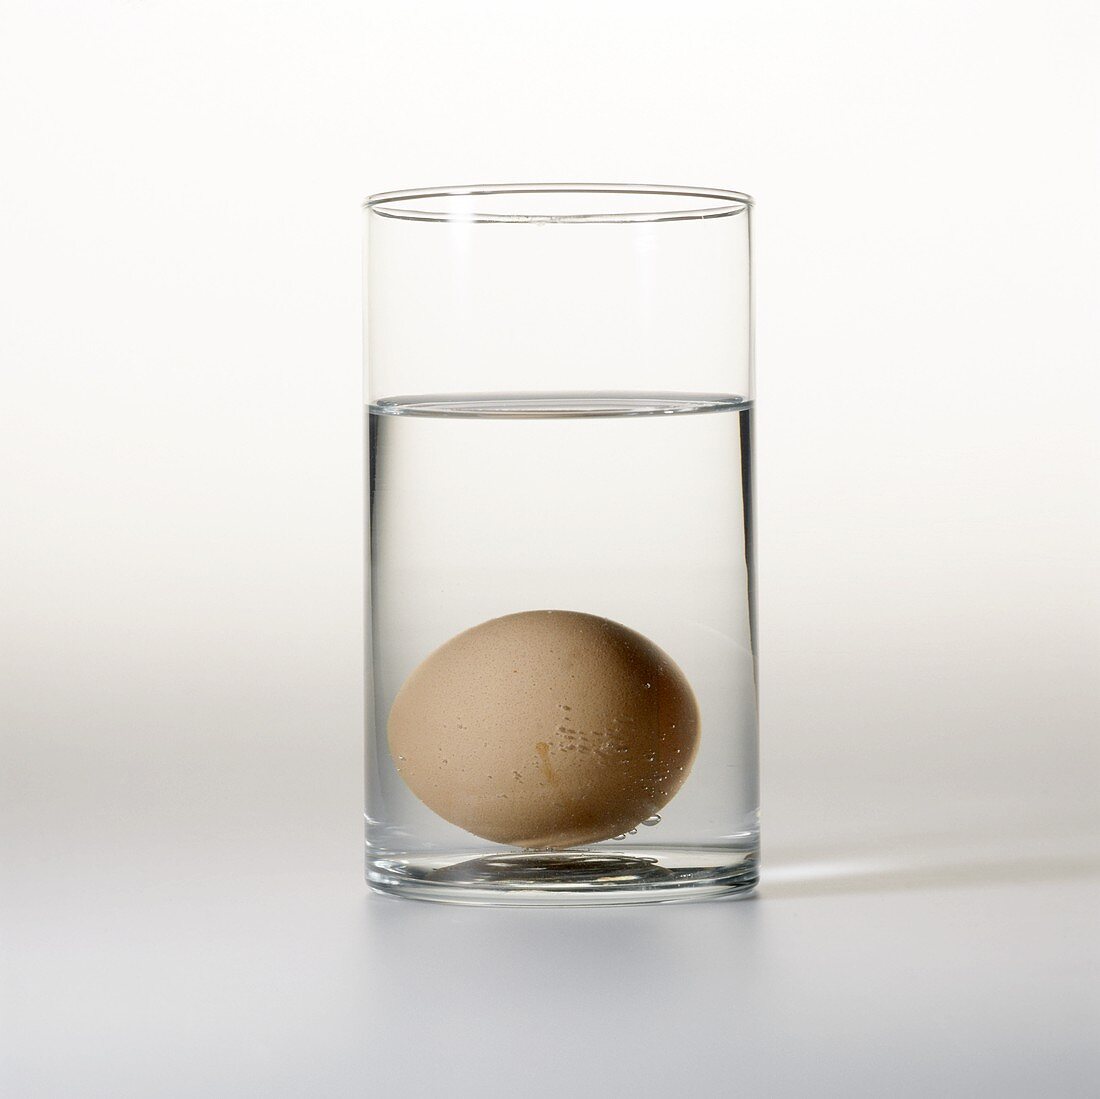 Frisches Ei auf Boden eines Wasserglases (Frischetest)